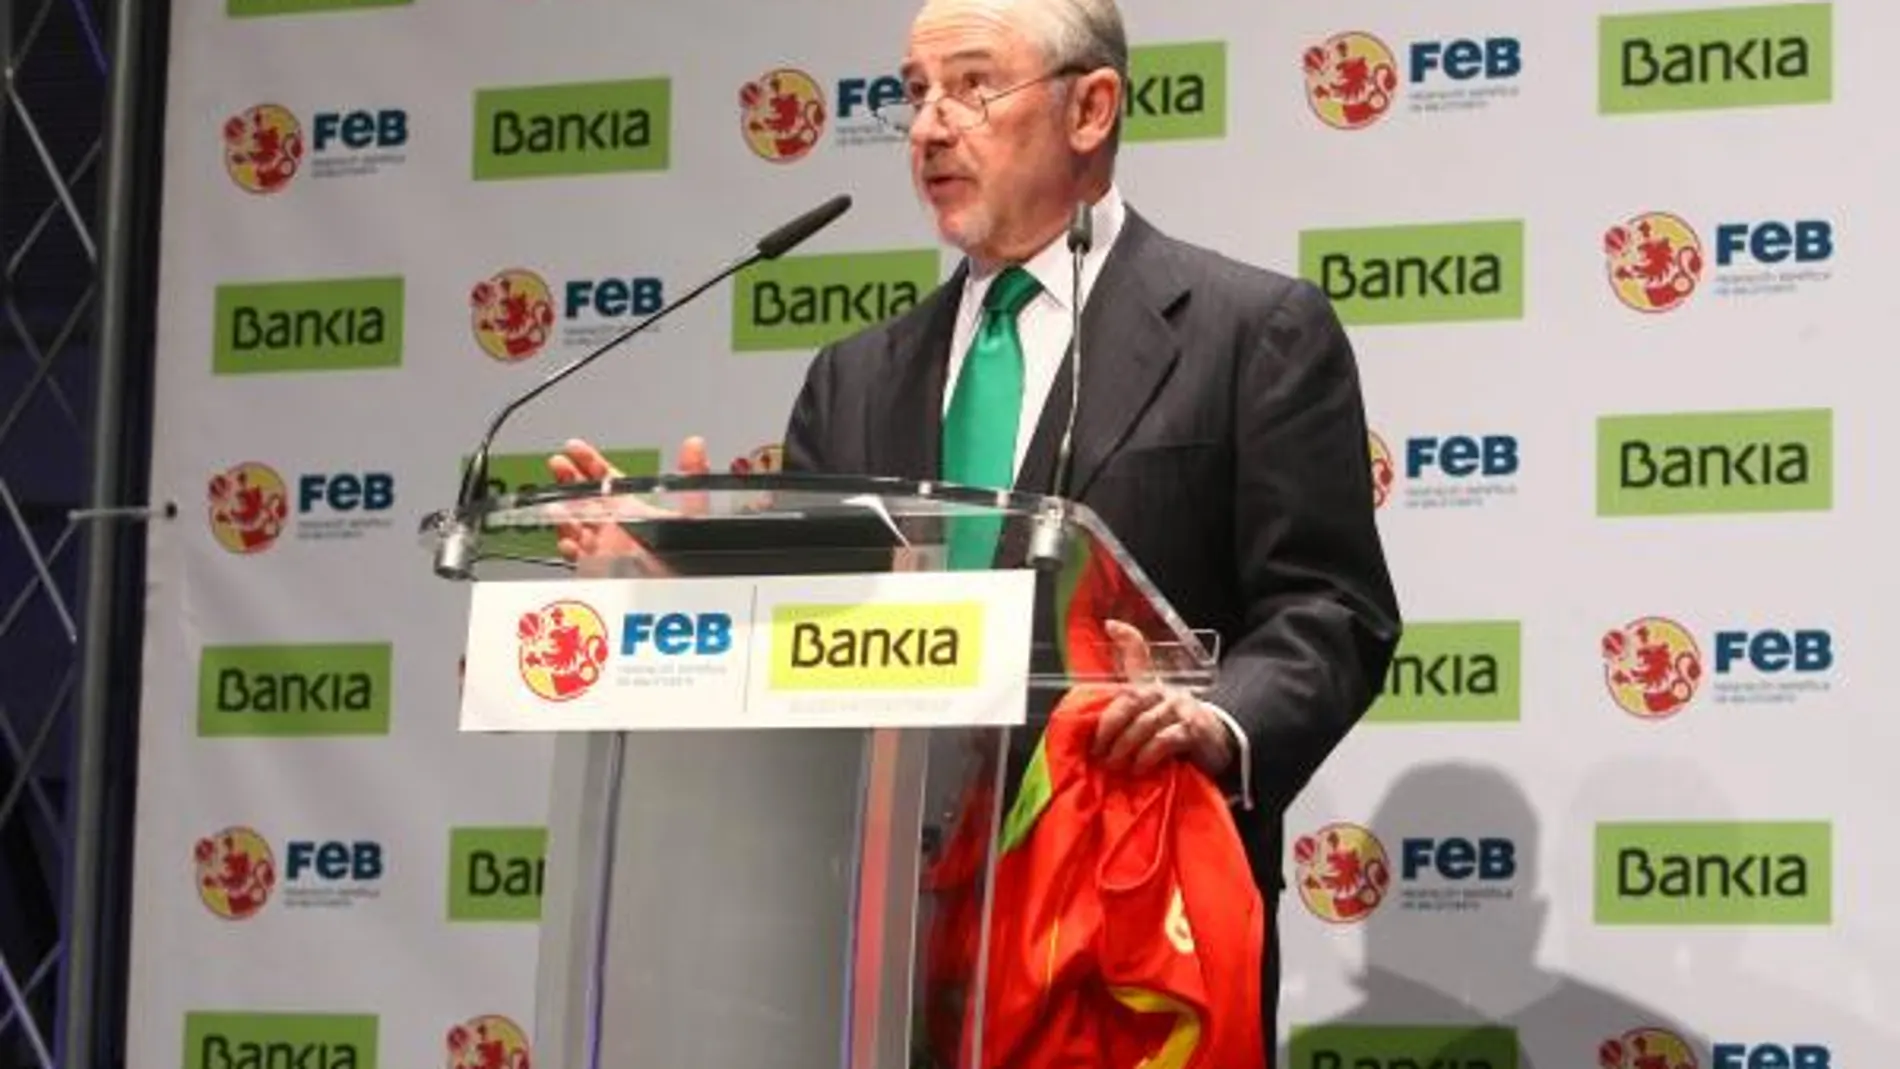 Rodrigo Rato, preside Bankia